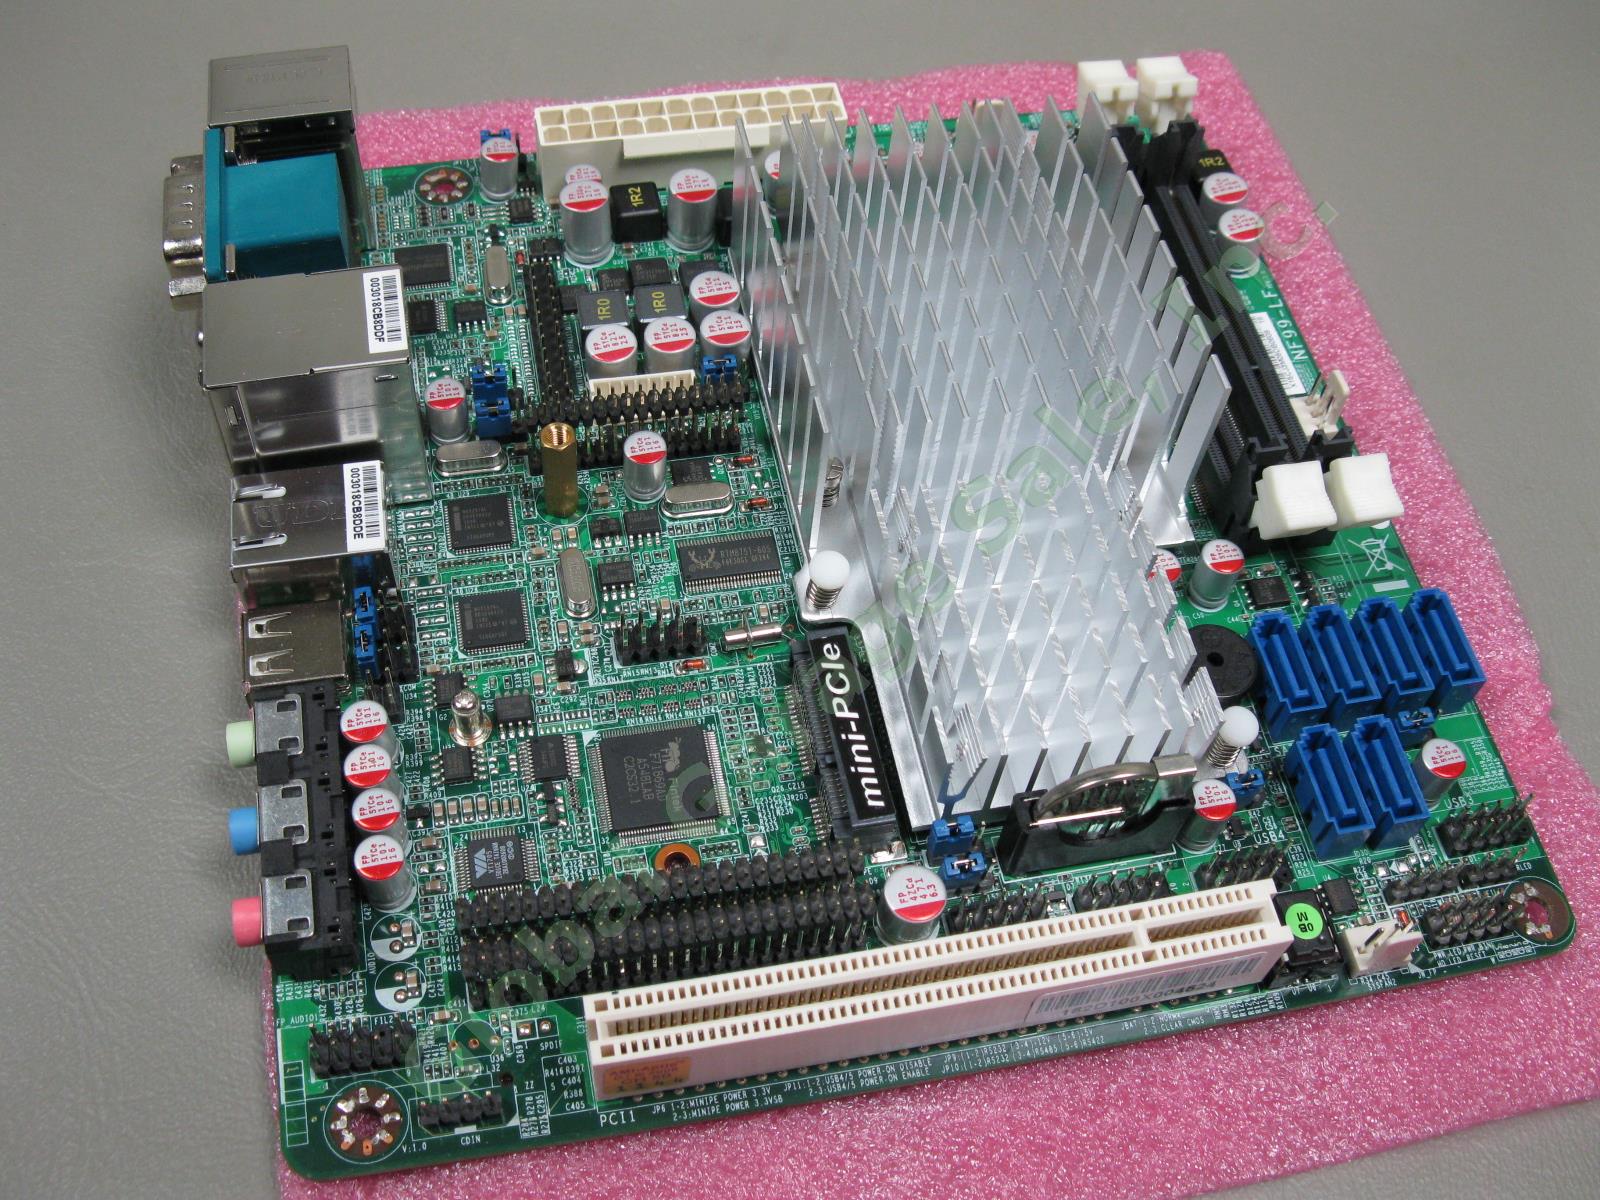 Jetway NF99FL-525 Intel Atom D525 Fanless 1.8GHz Networking Mini-ITX Motherboard 2